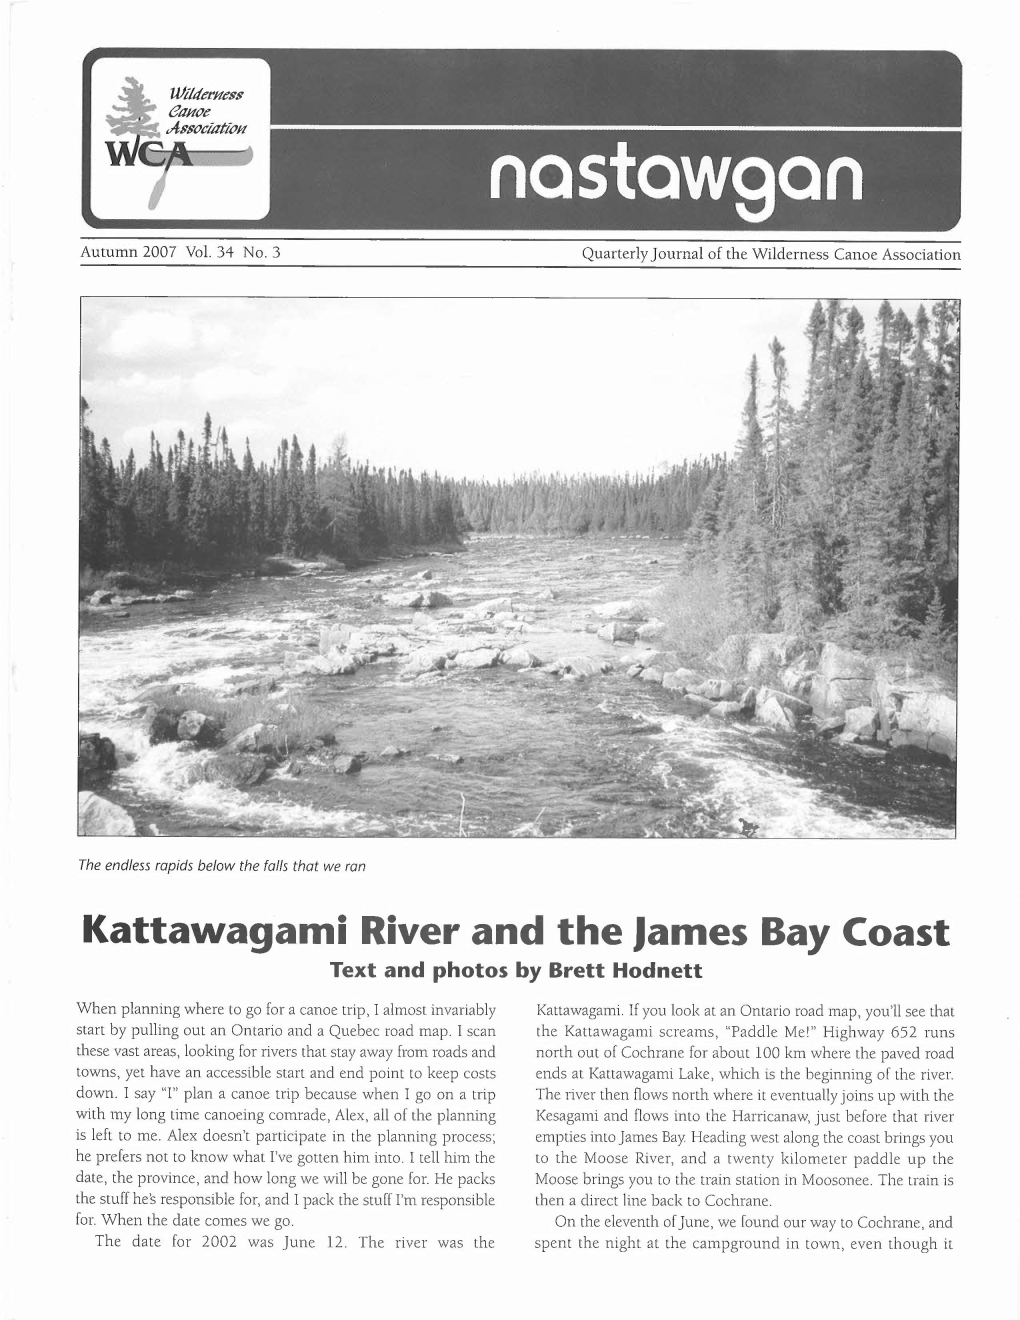 Kattawagami River and the James Bay Coast Text and Photos by Brett Hodnett